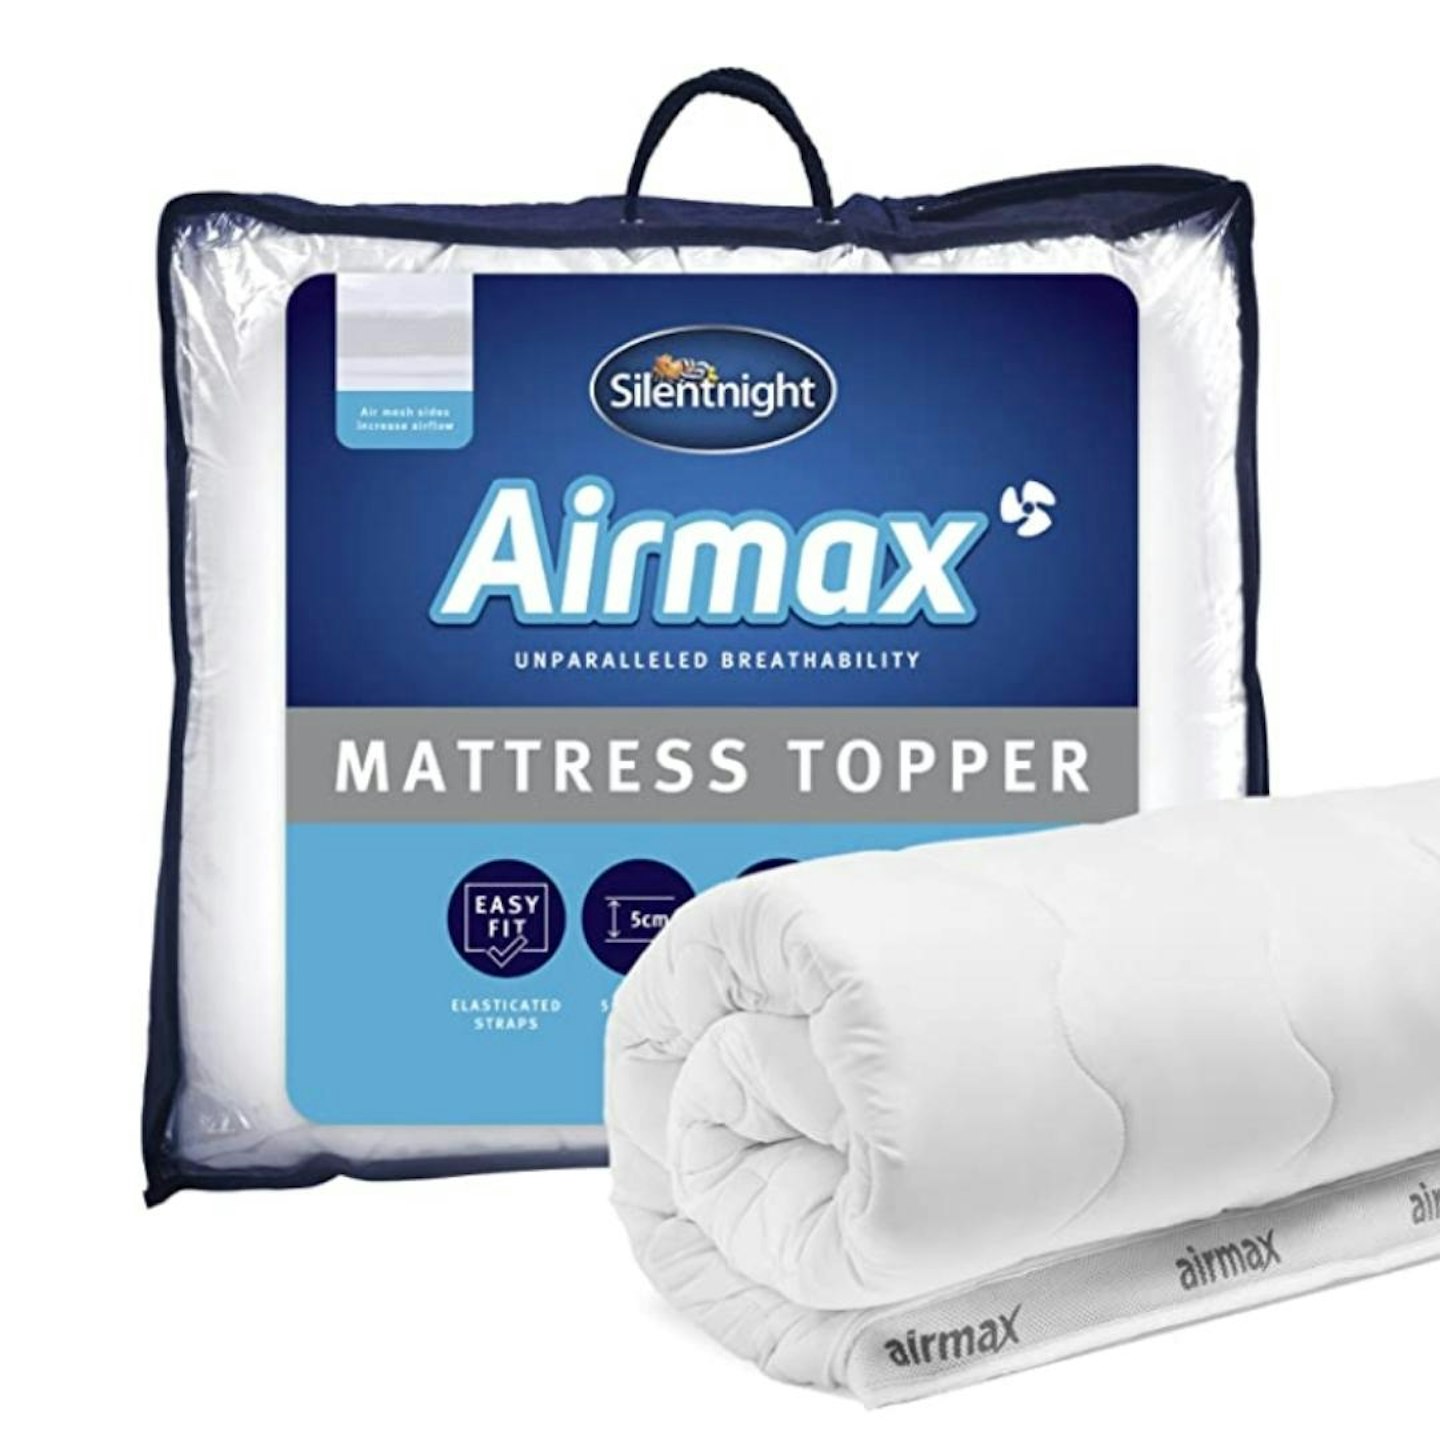 Silentnight Airmax Mattress Topper